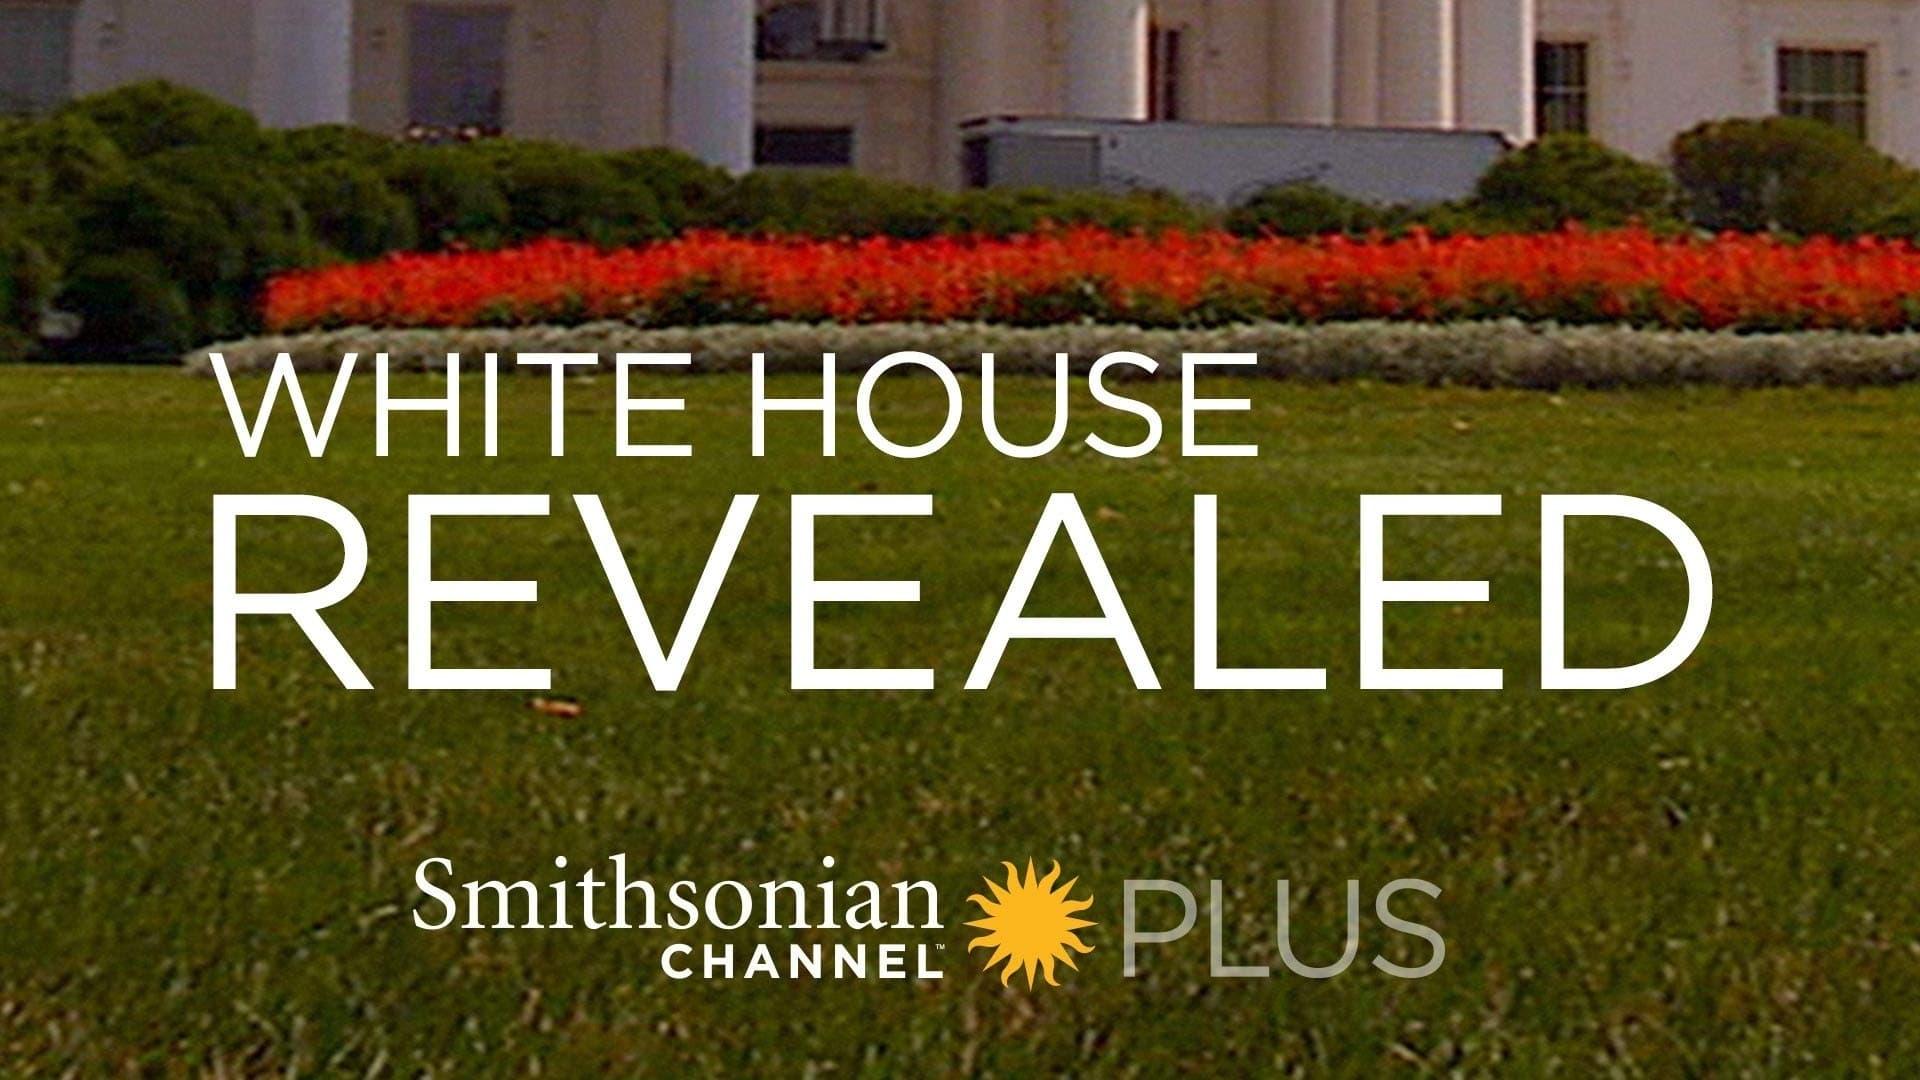 White House Revealed backdrop